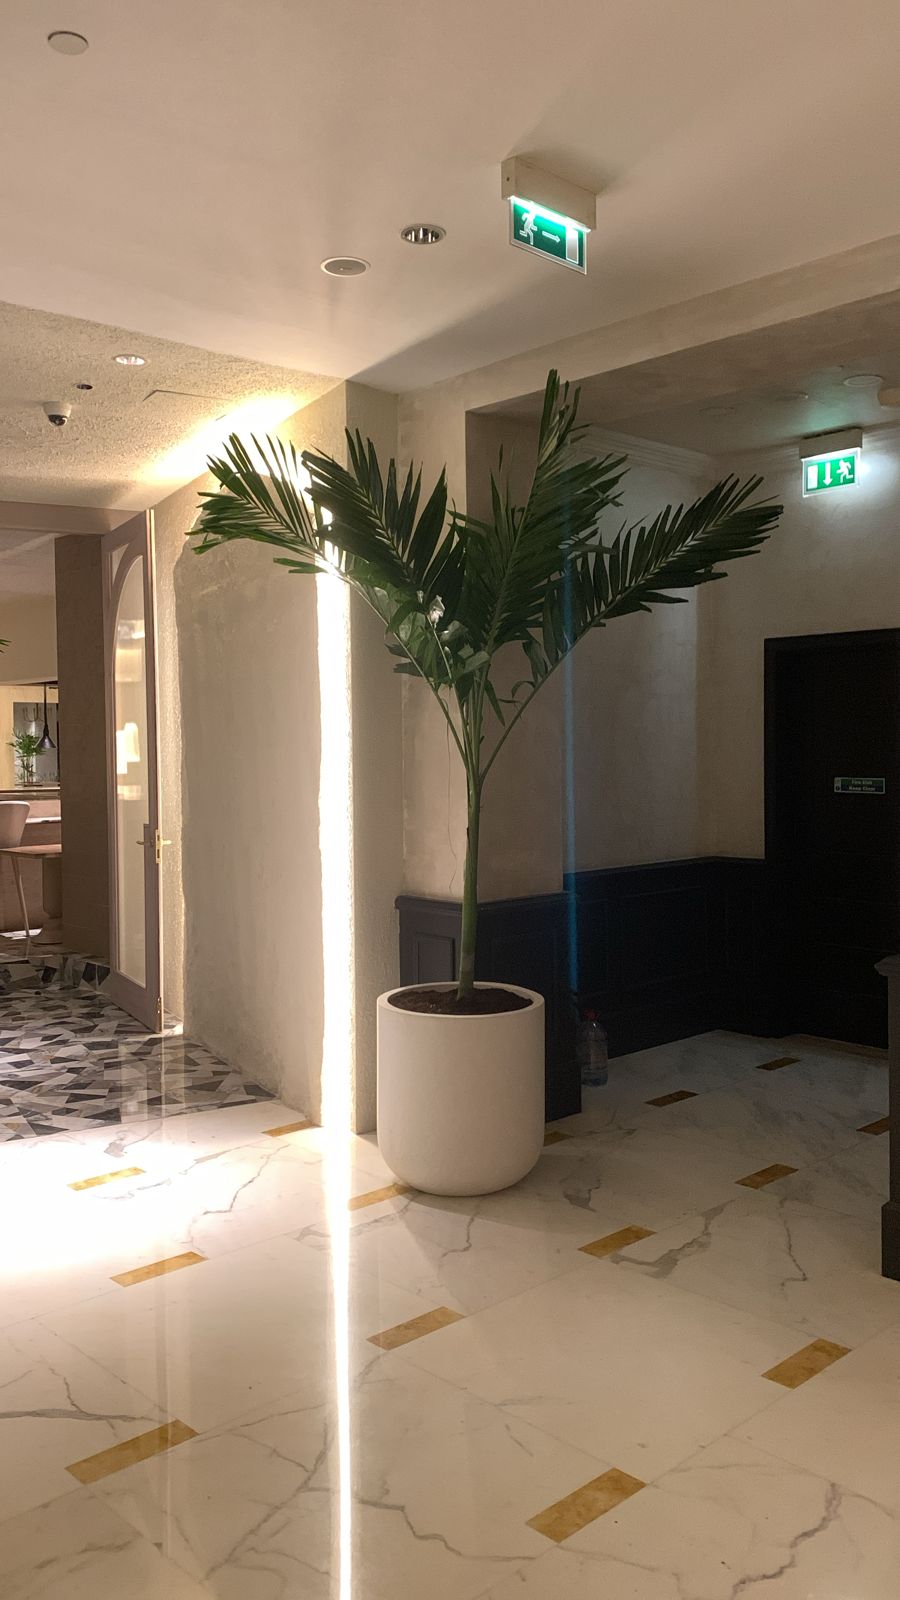 Vietchia Palm in Fiber pot 2.2m to 2.5m